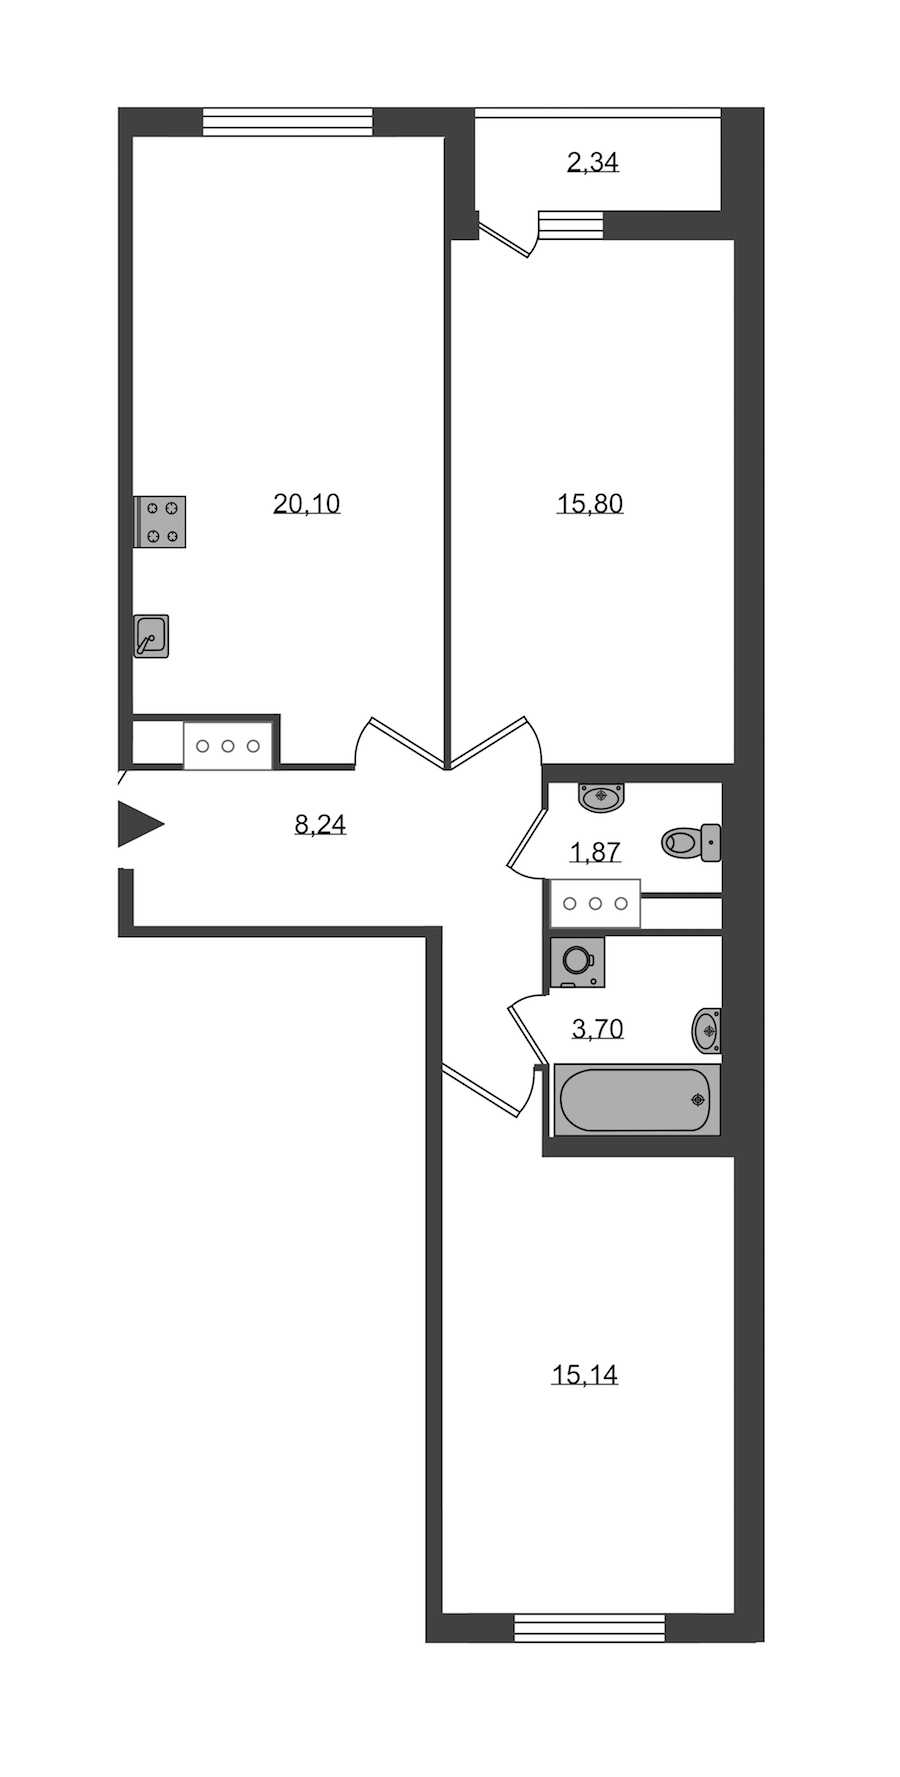 Двухкомнатная квартира в KVS: площадь 64.85 м2 , этаж: 2 – купить в Санкт-Петербурге